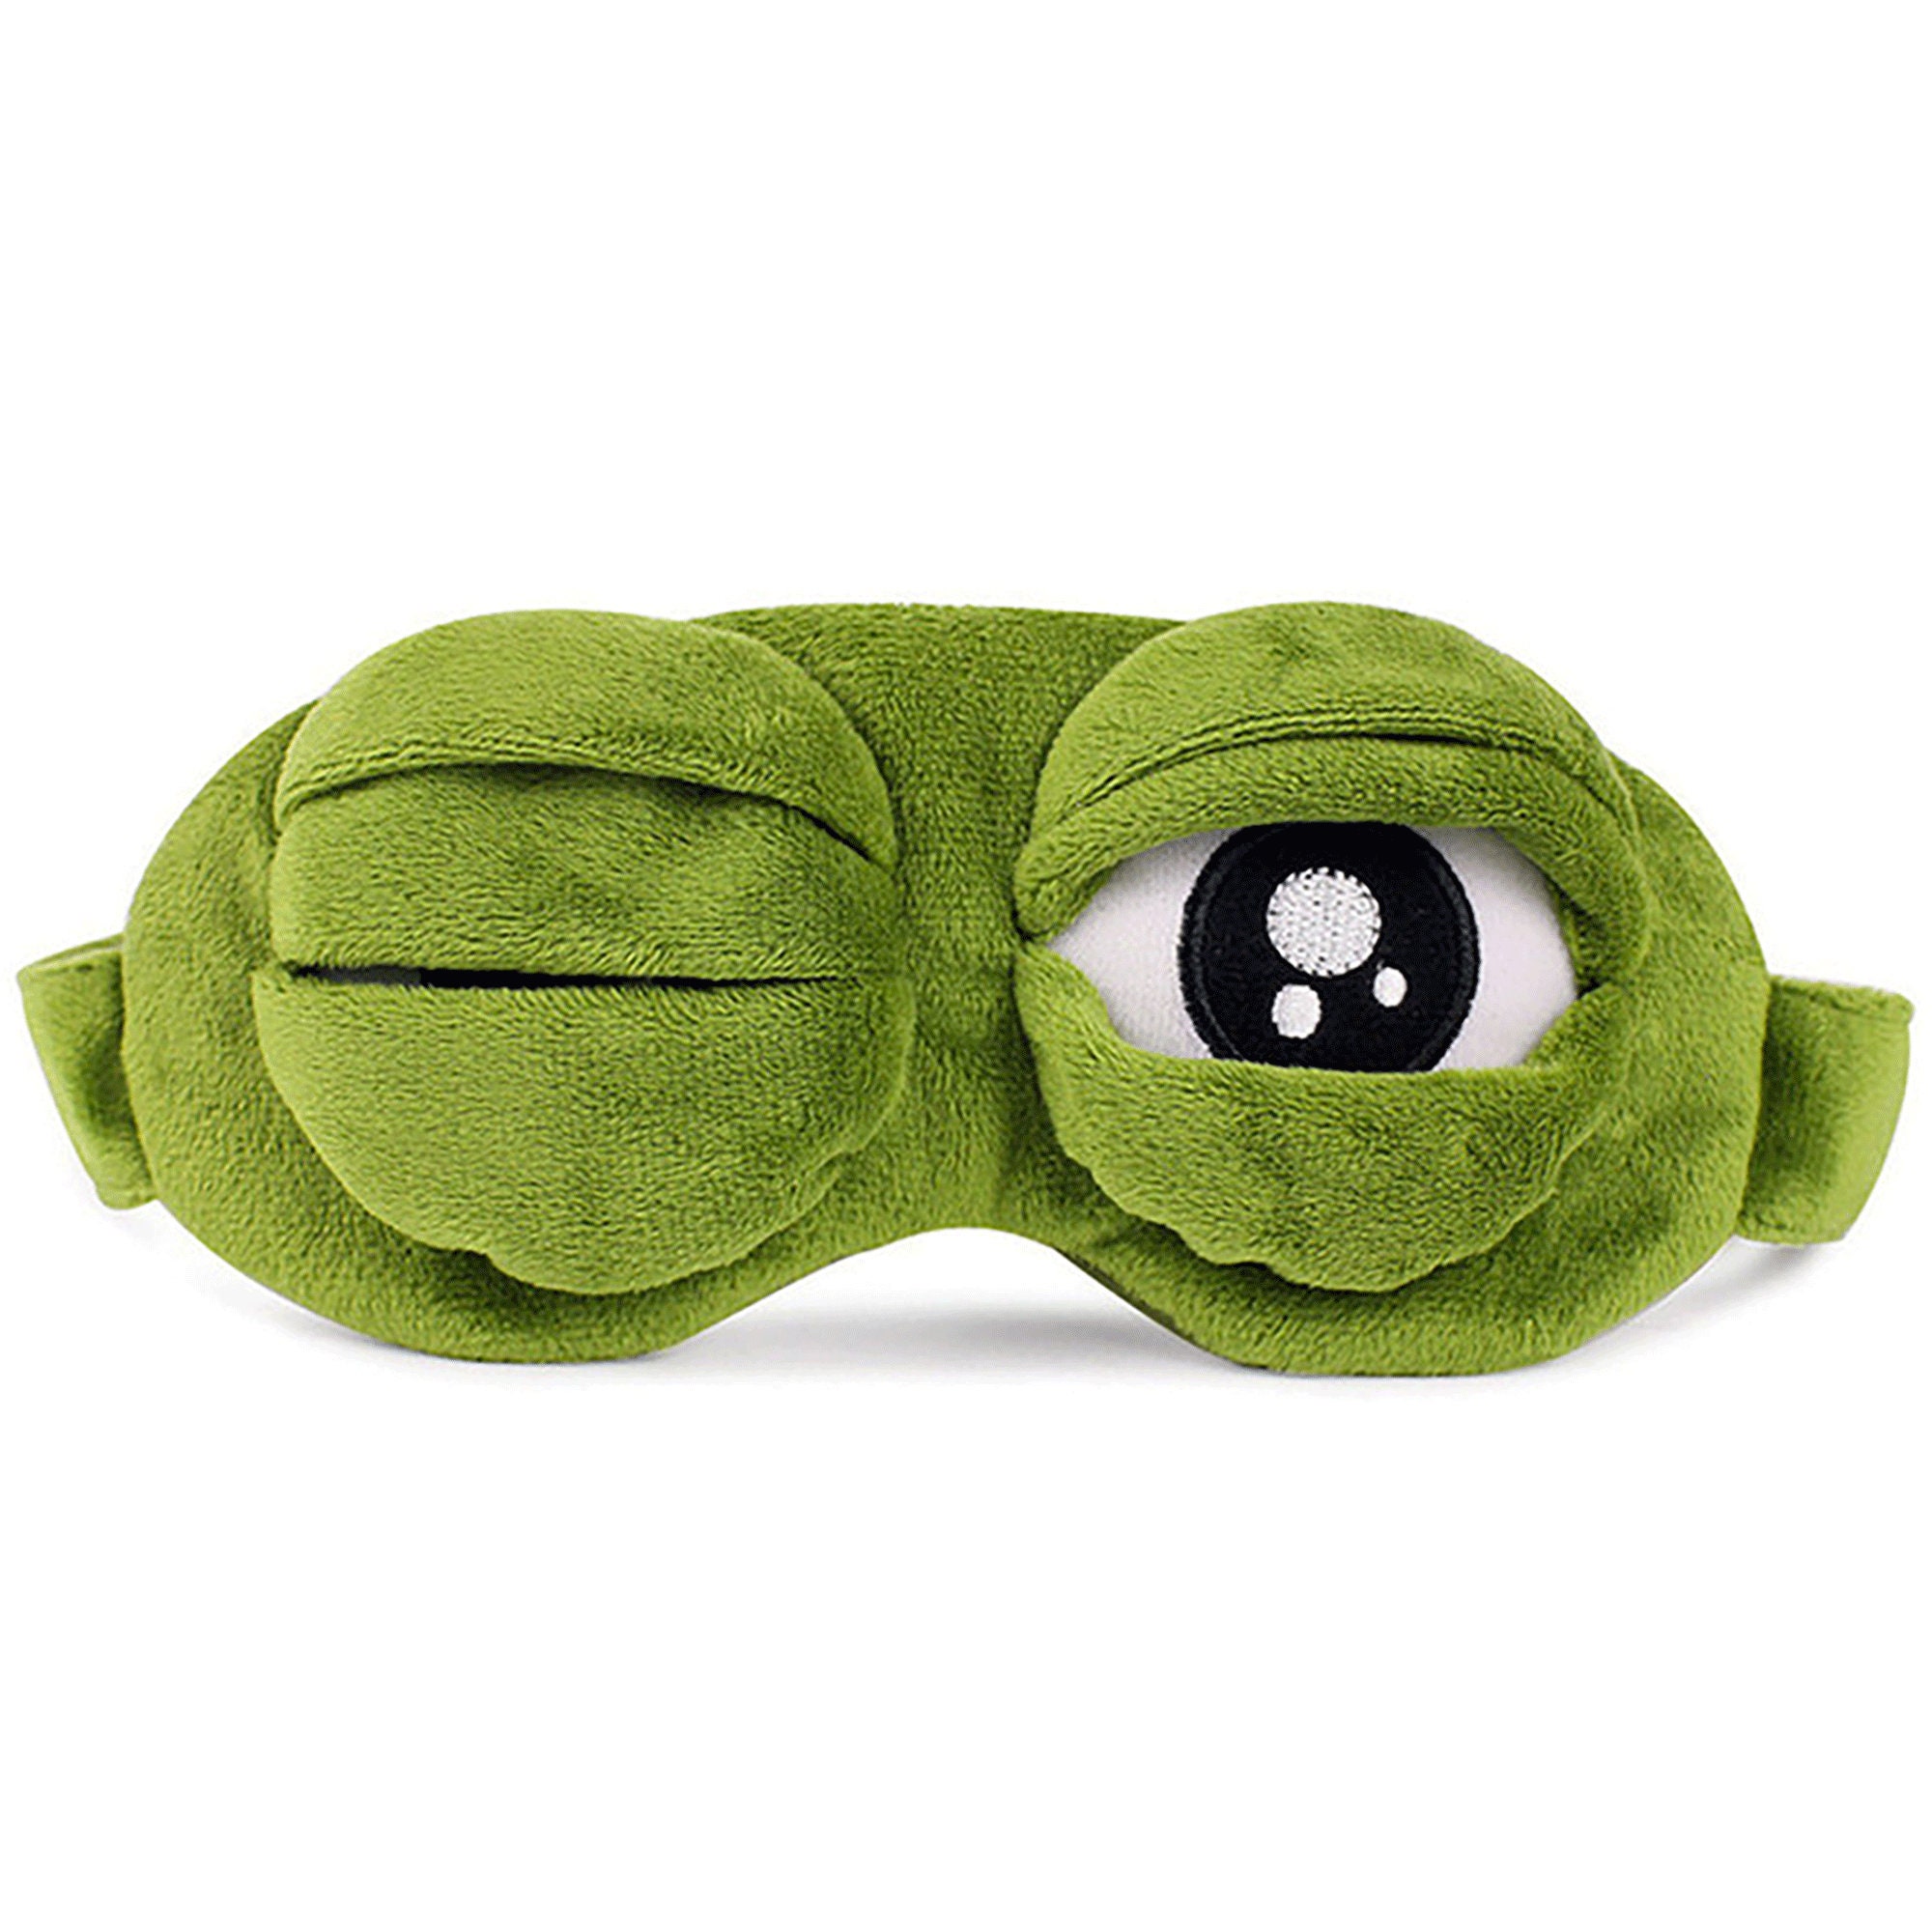 Маска пепе. Маска для сна Пепе. Маска для сна Pepe Frog. Маска для сна лягушка Пепес. Лягушонок Пепе в маске.